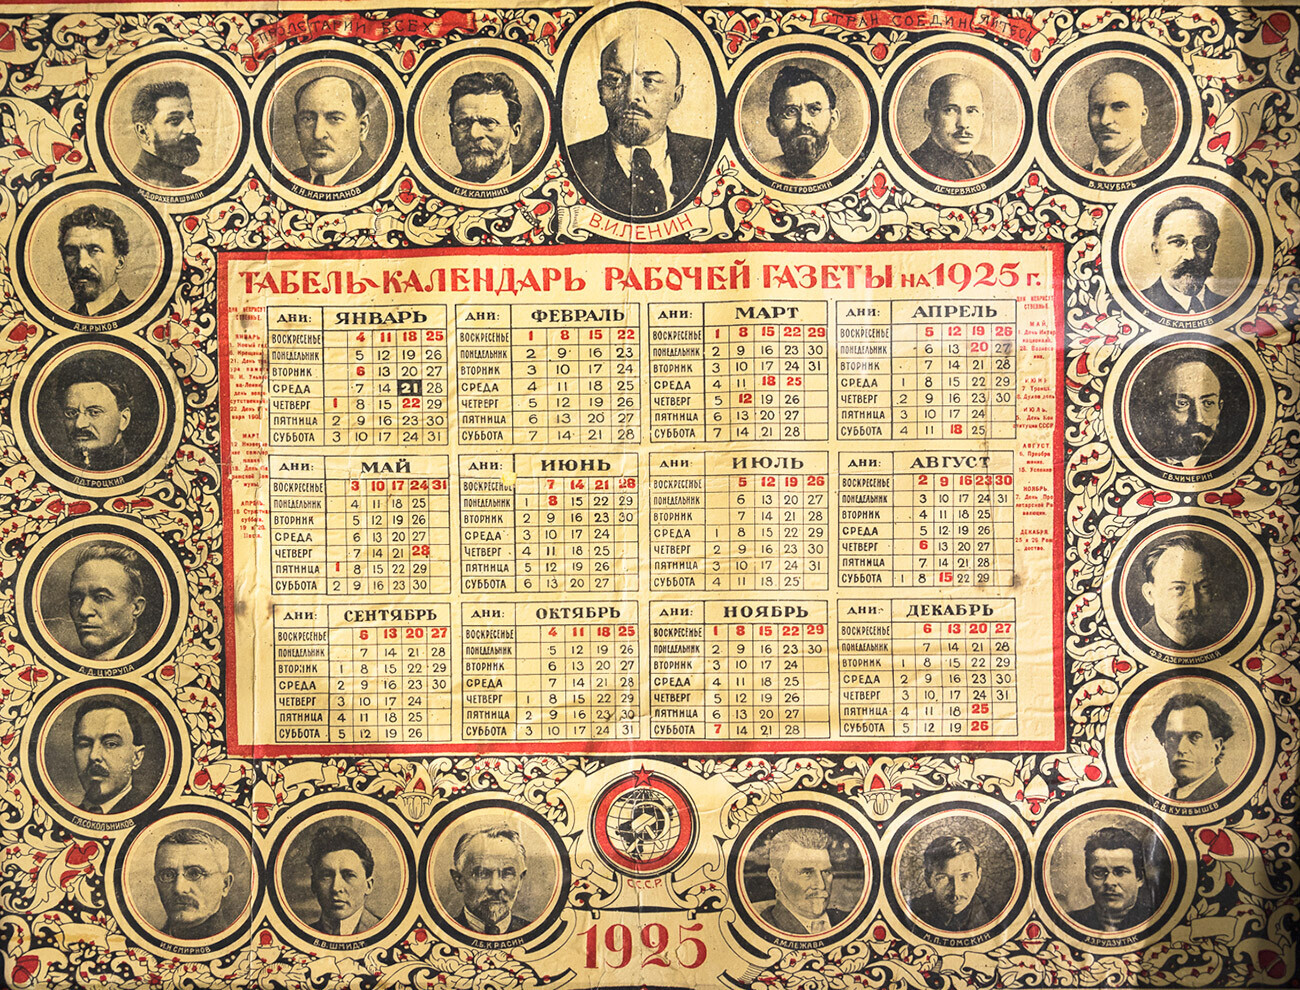 Calendário soviético de 1925, com as semanas ainda começando no domingo